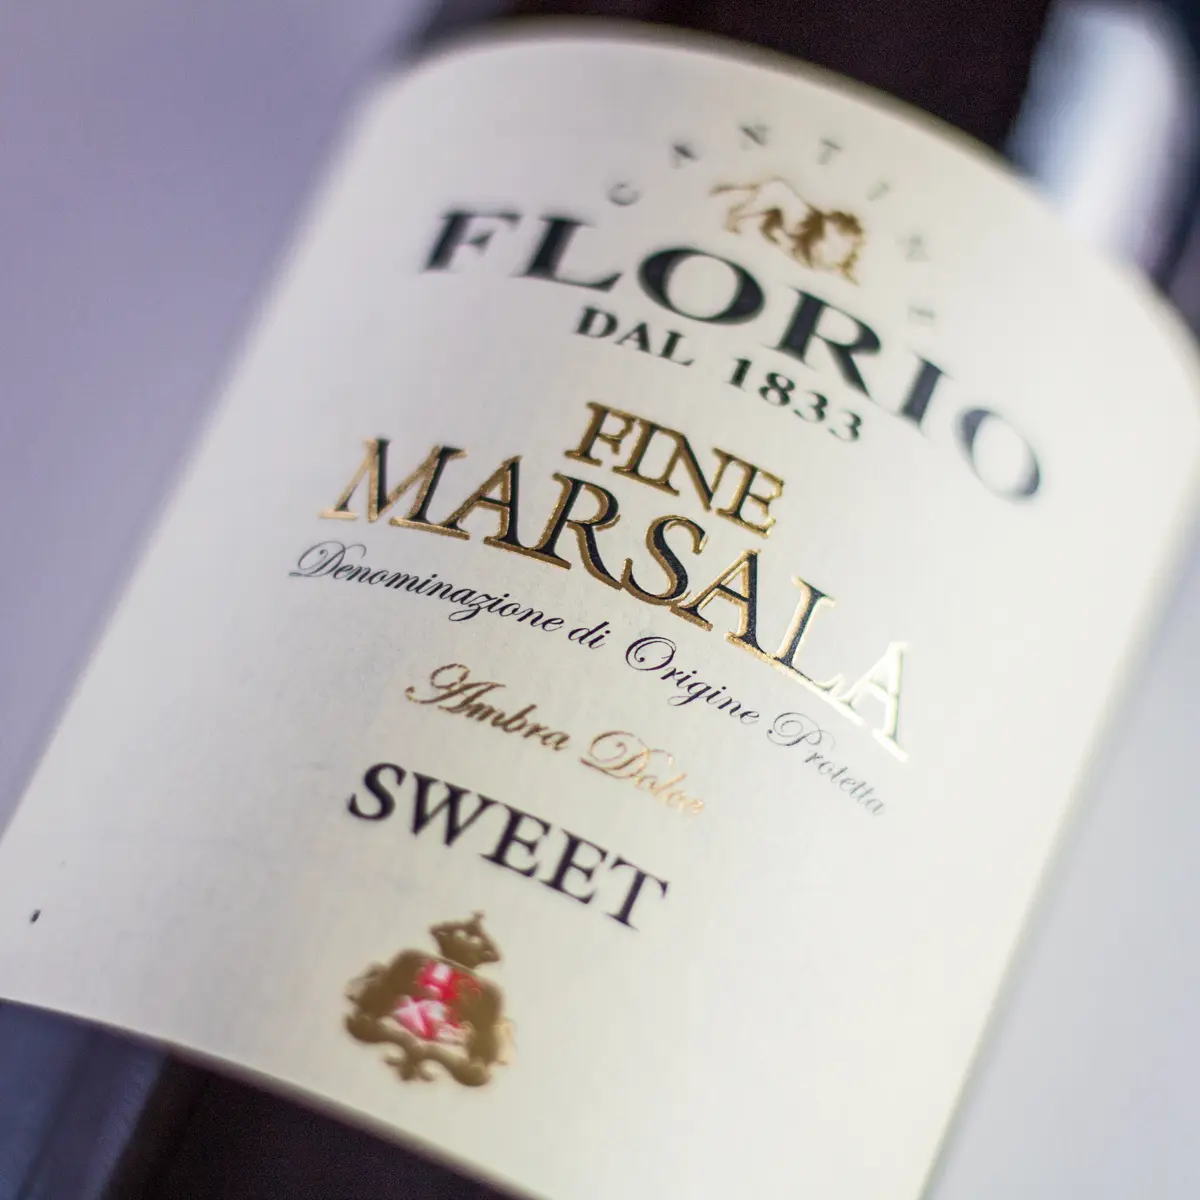 Imagen grande y cuadrada de Marsala Wine Substitute que muestra la etiqueta de la botella.